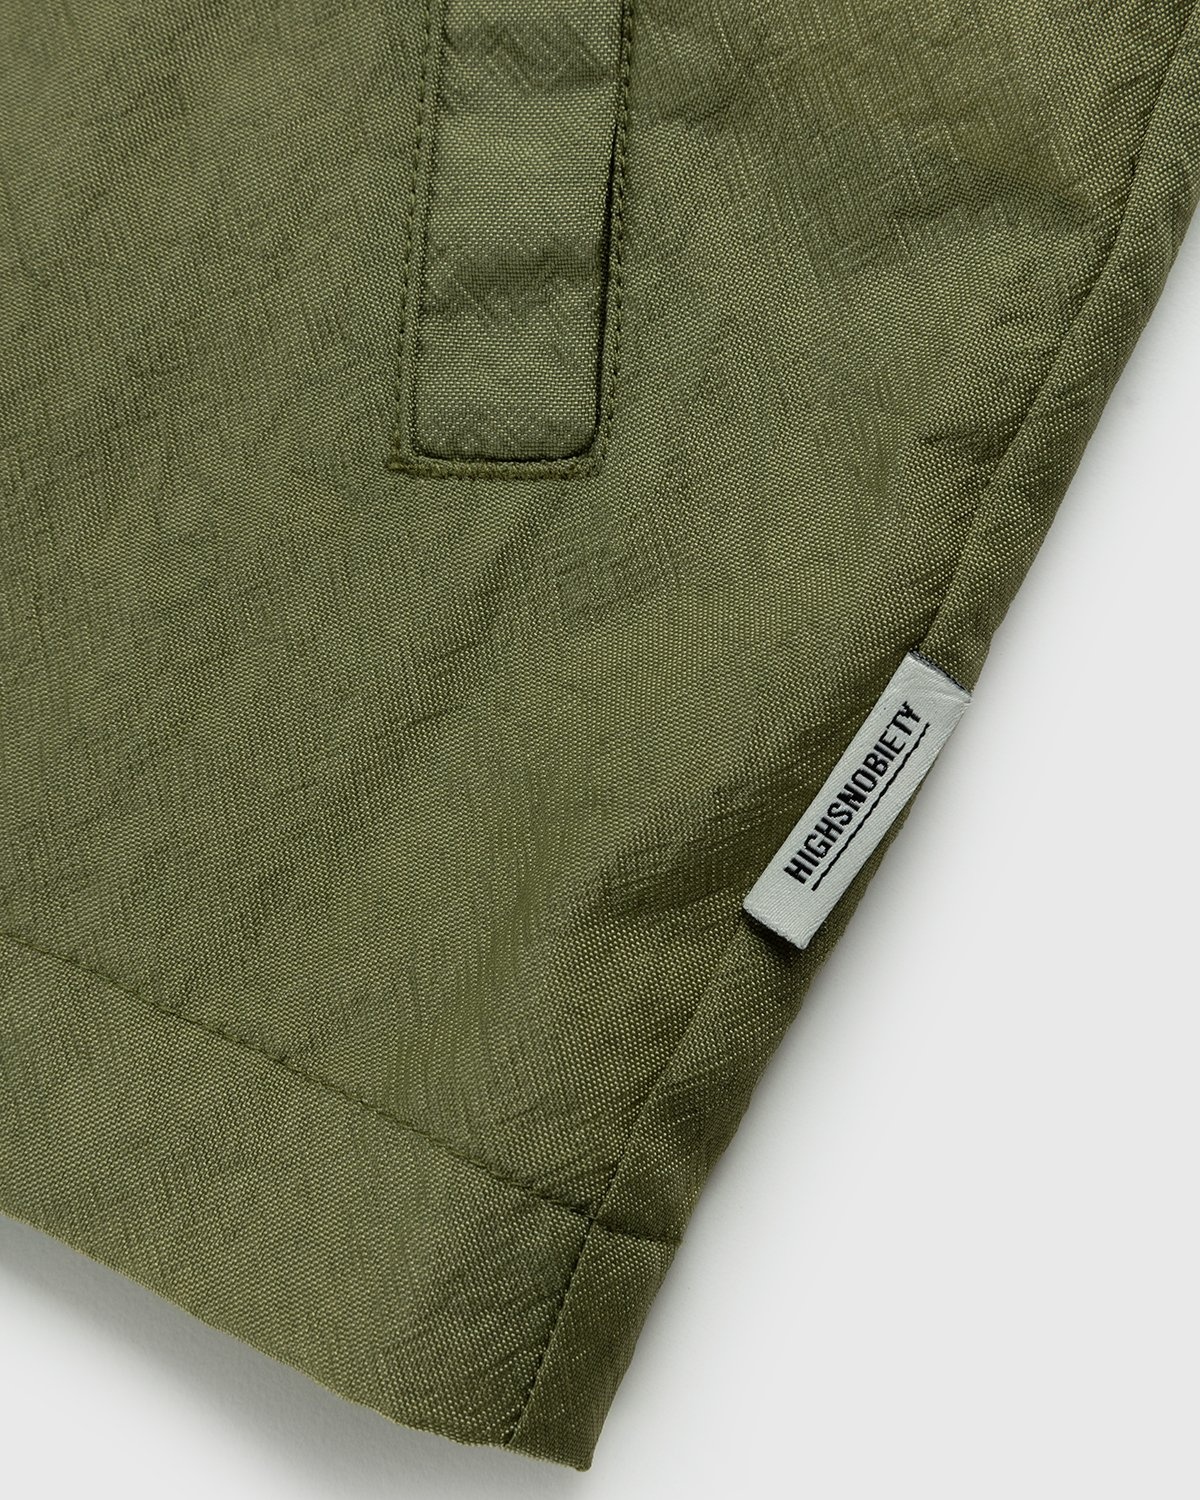 Highsnobiety – Stonewashed Nylon Coach Jacket Olive - Outerwear - Green - Image 4